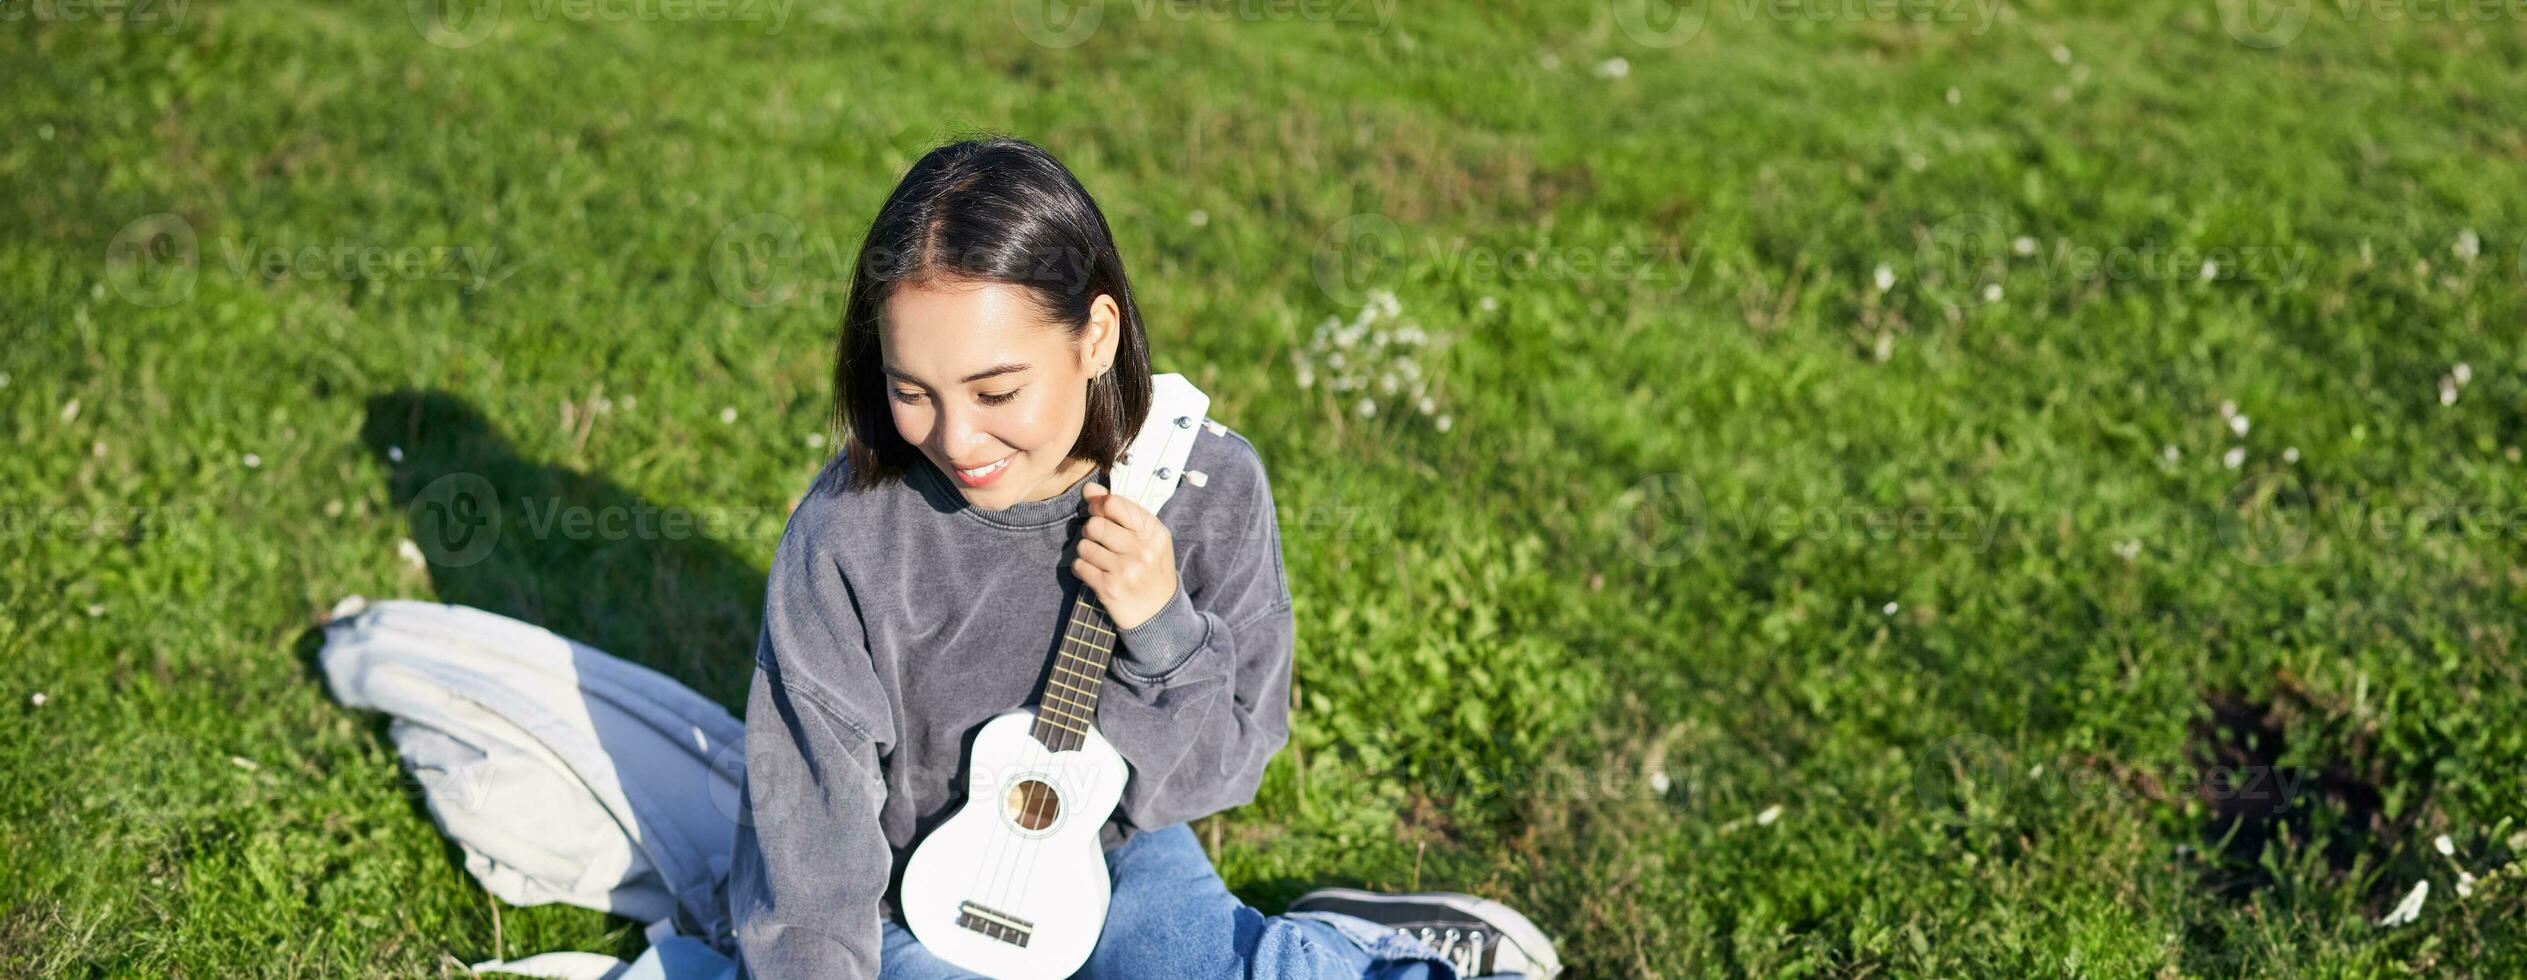 sorridente asiatico ragazza impara Come per giocare ukulele su computer portatile, video Chiacchierare con musica insegnante, seduta con strumento nel parco su erba foto